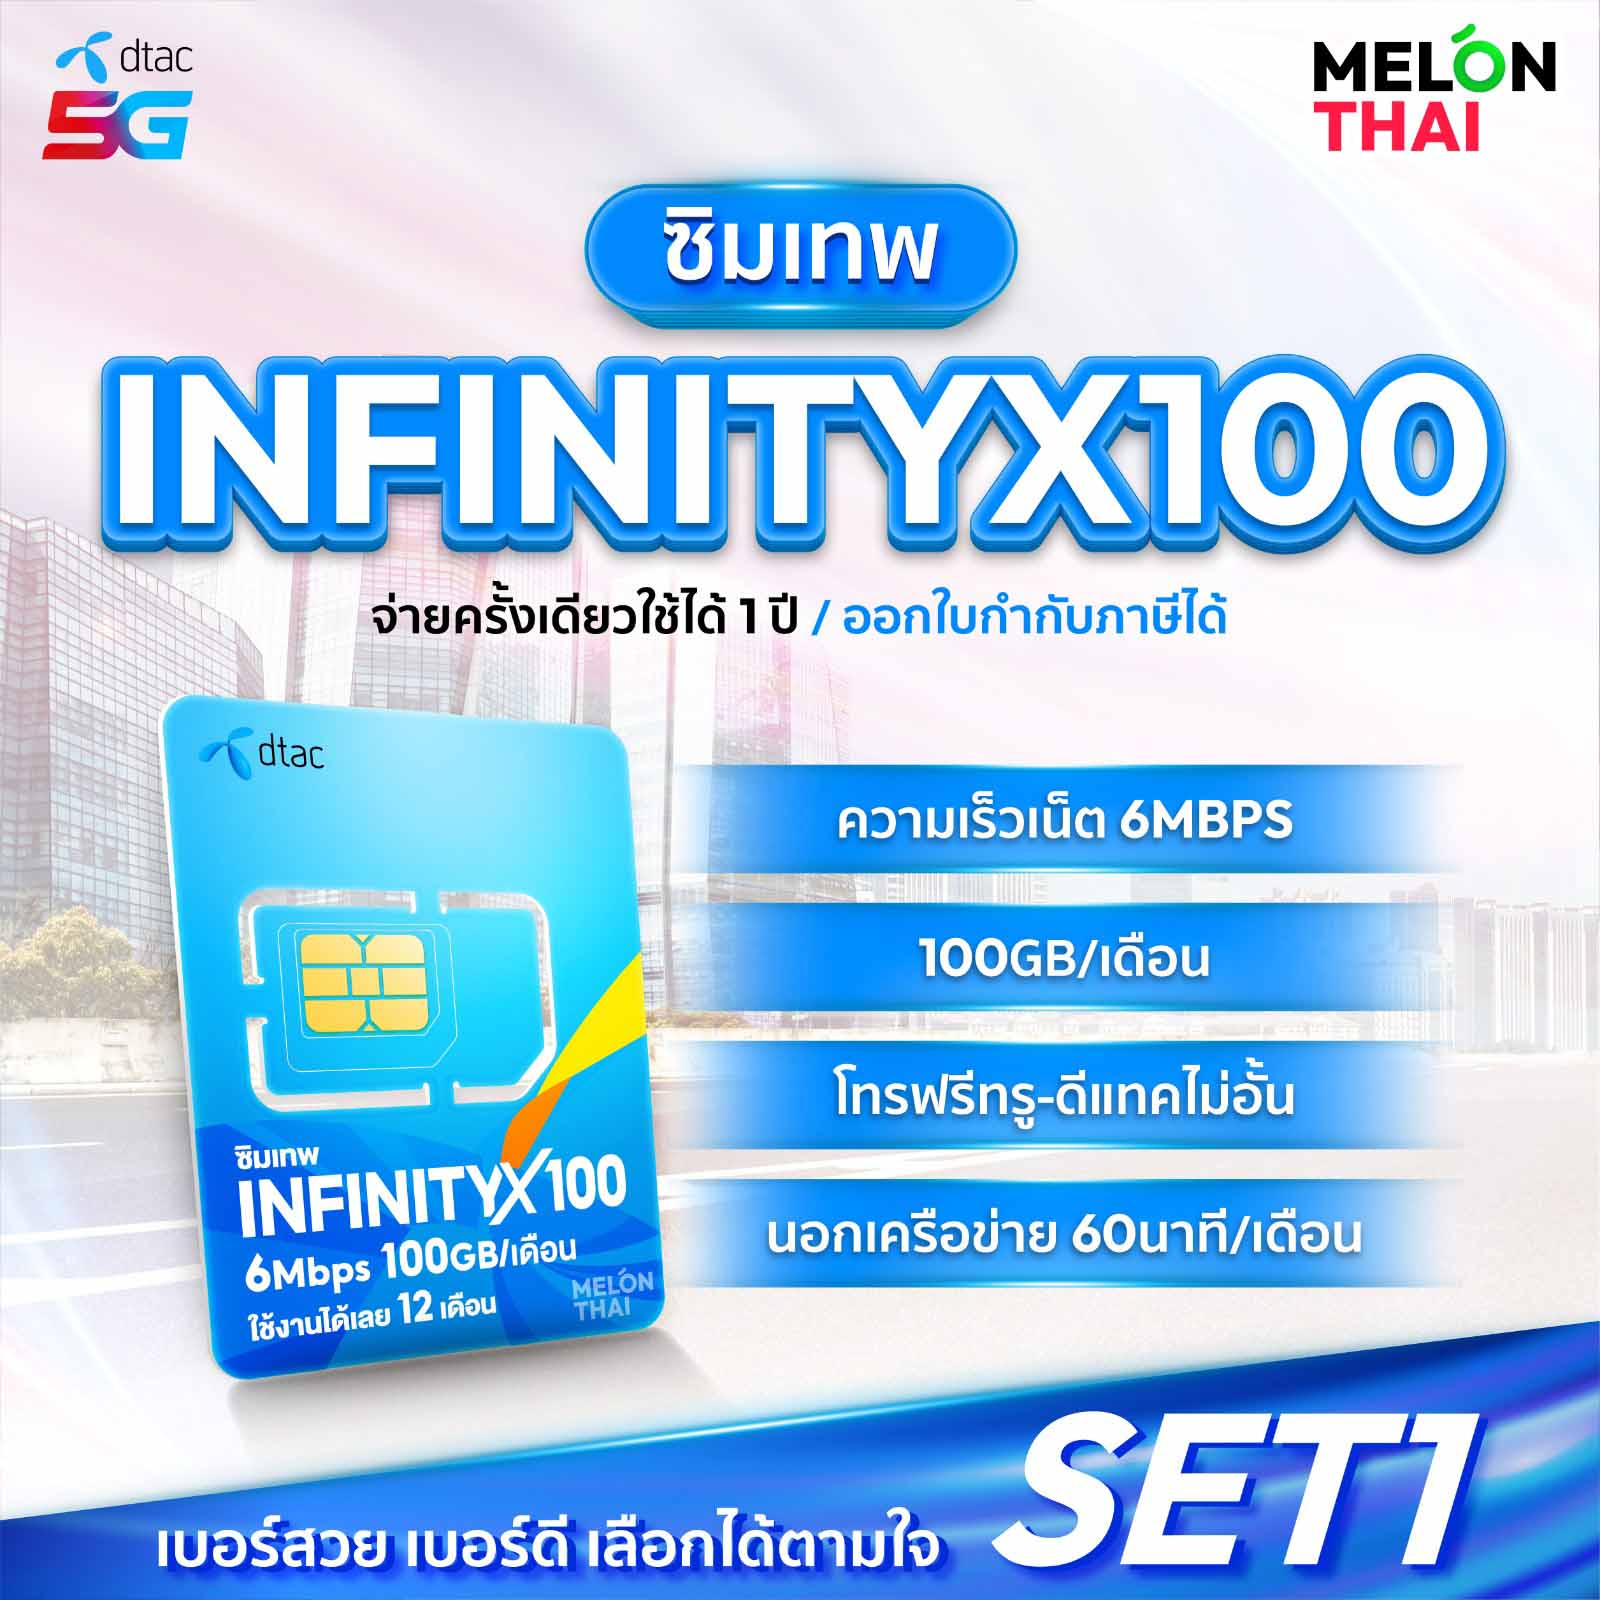 ซิมเทพ Dtac infinity X100 เลือกเบอร์ได้ 6mbps 100GB โทรฟรี 